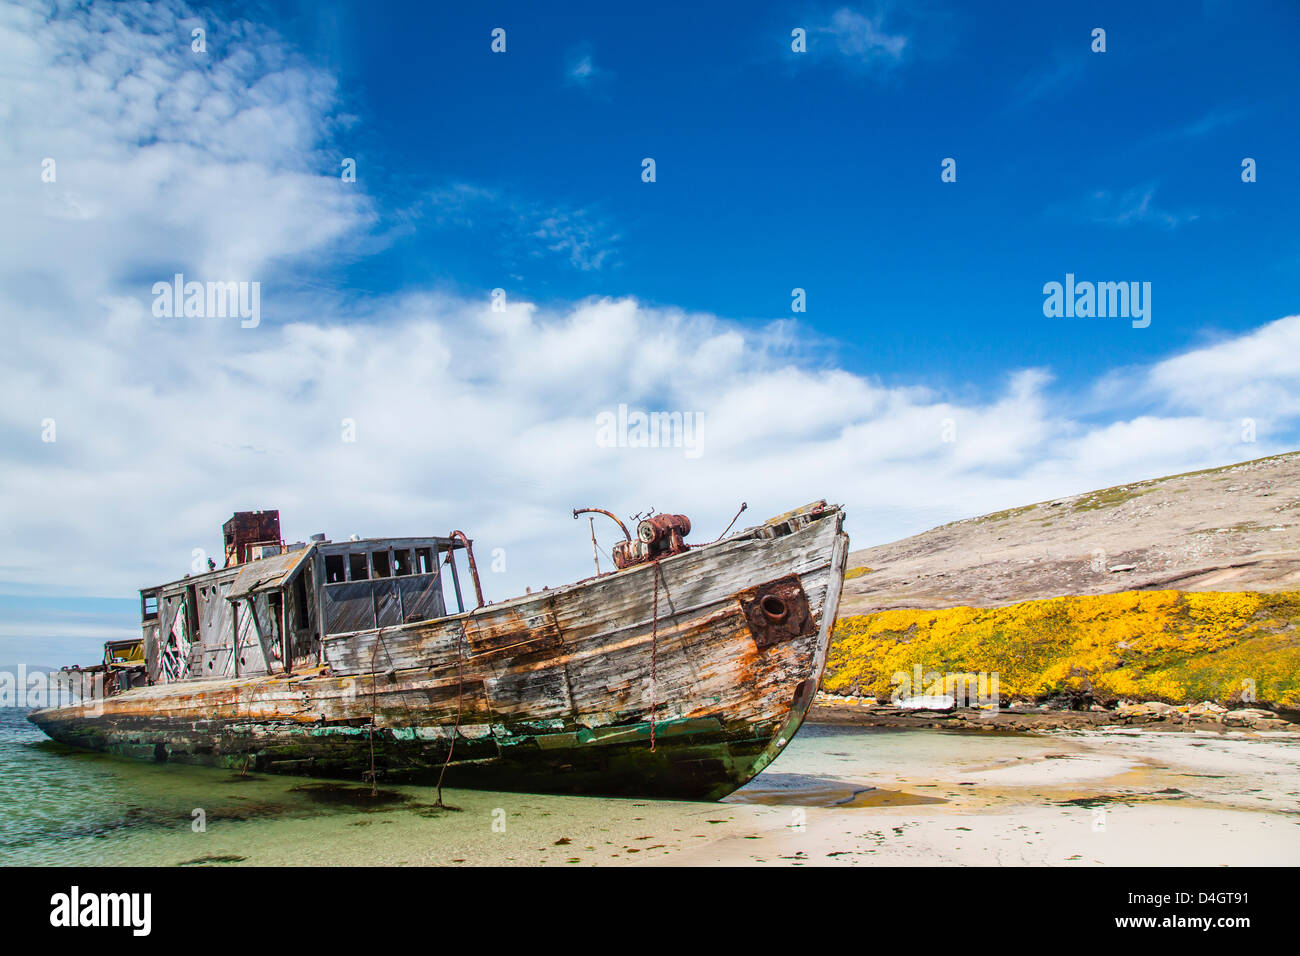 Bateau en bois abandonnés sur l'île nouvelle, Îles Falkland, Sud de l'océan Atlantique, l'Amérique du Sud Banque D'Images